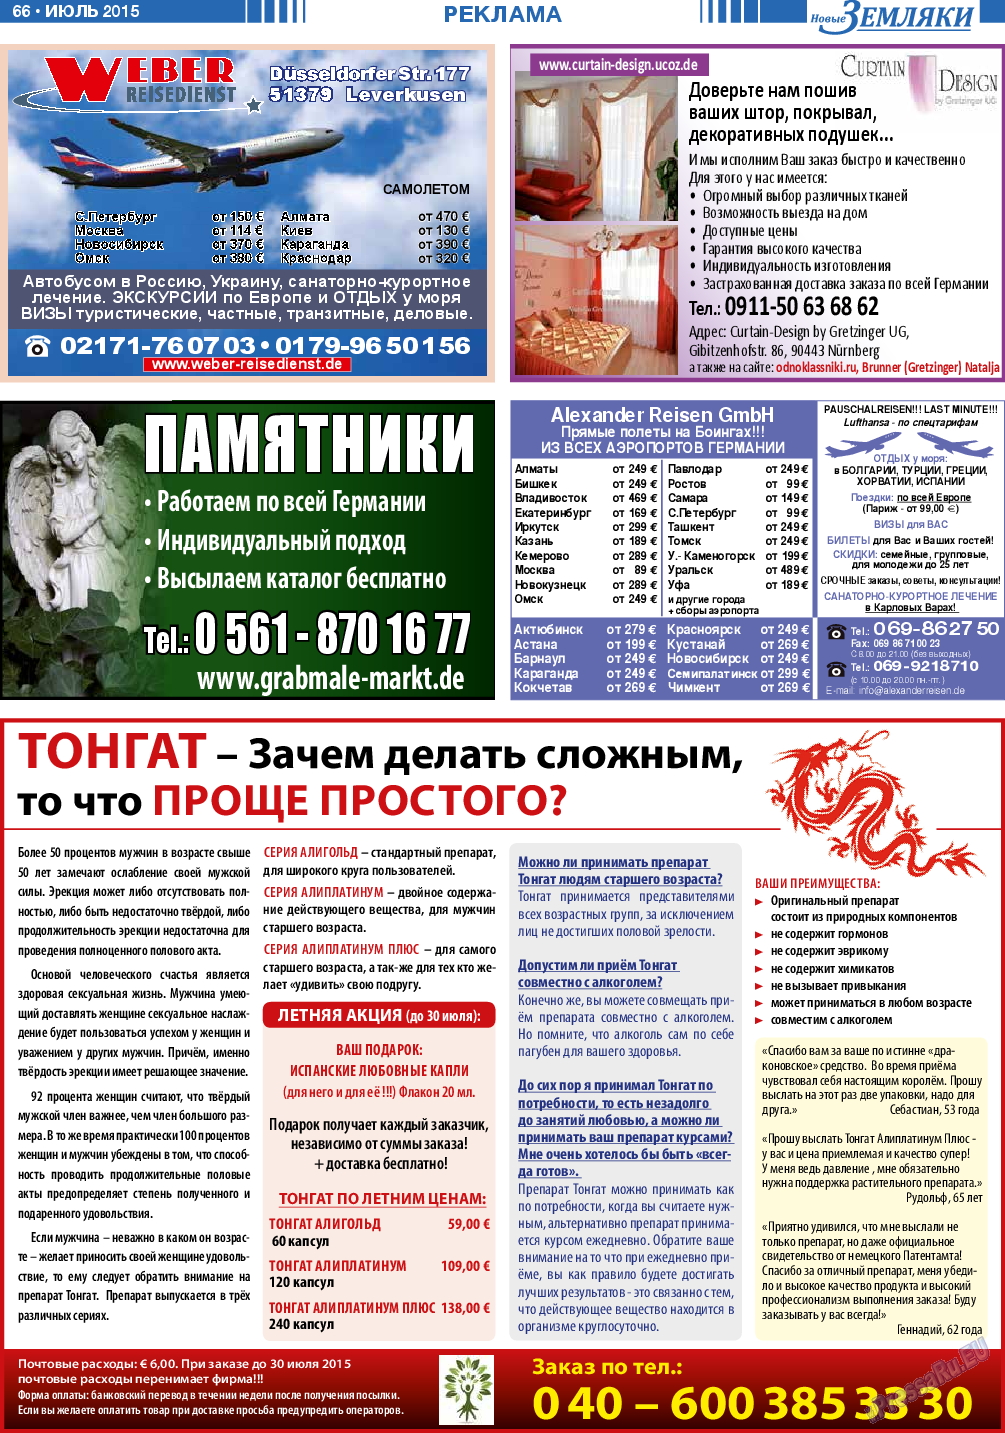 Новые Земляки, газета. 2015 №7 стр.66